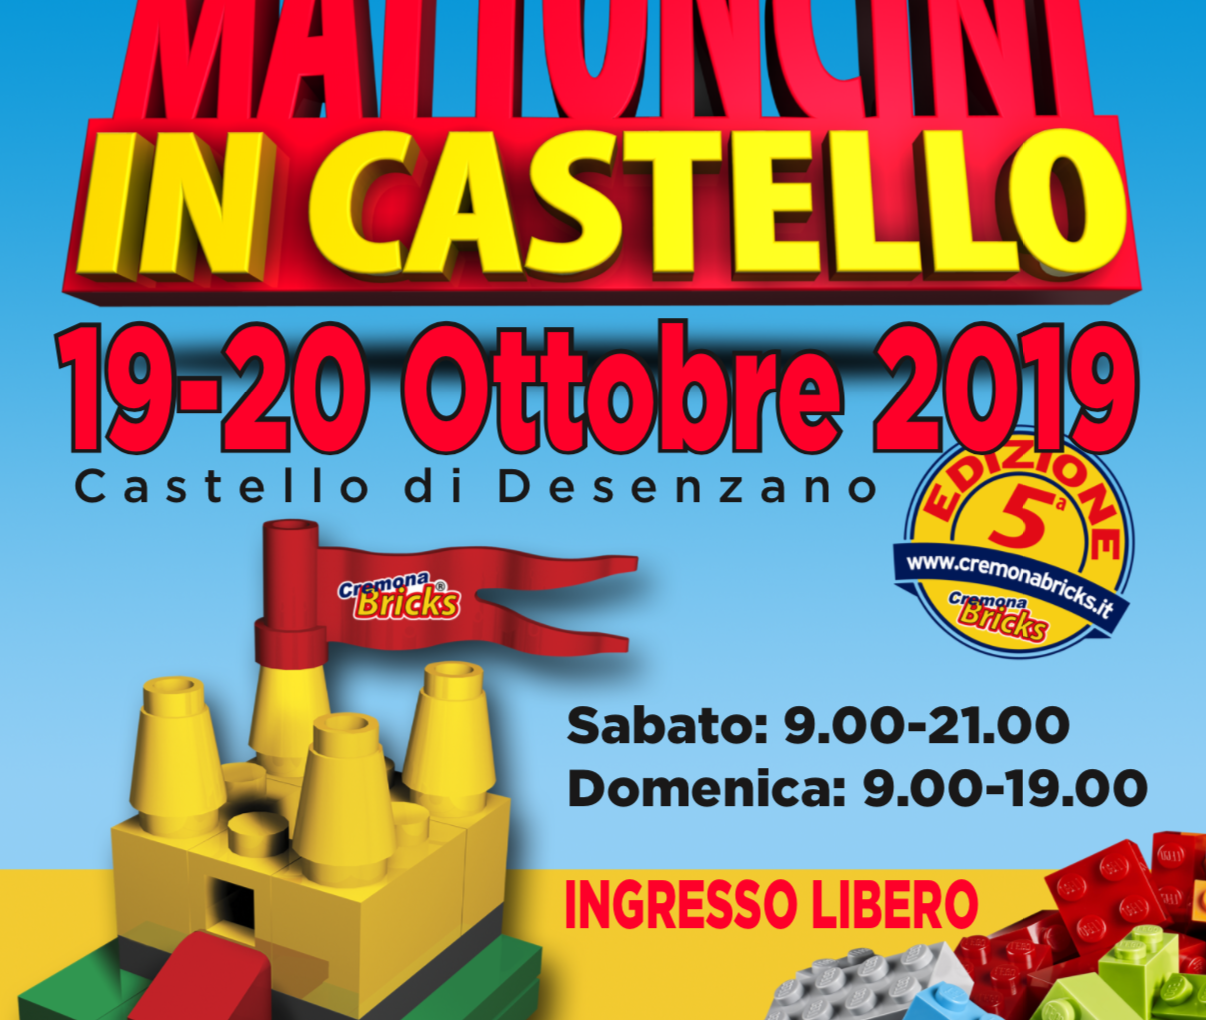 Mattoncini in Castello 2019